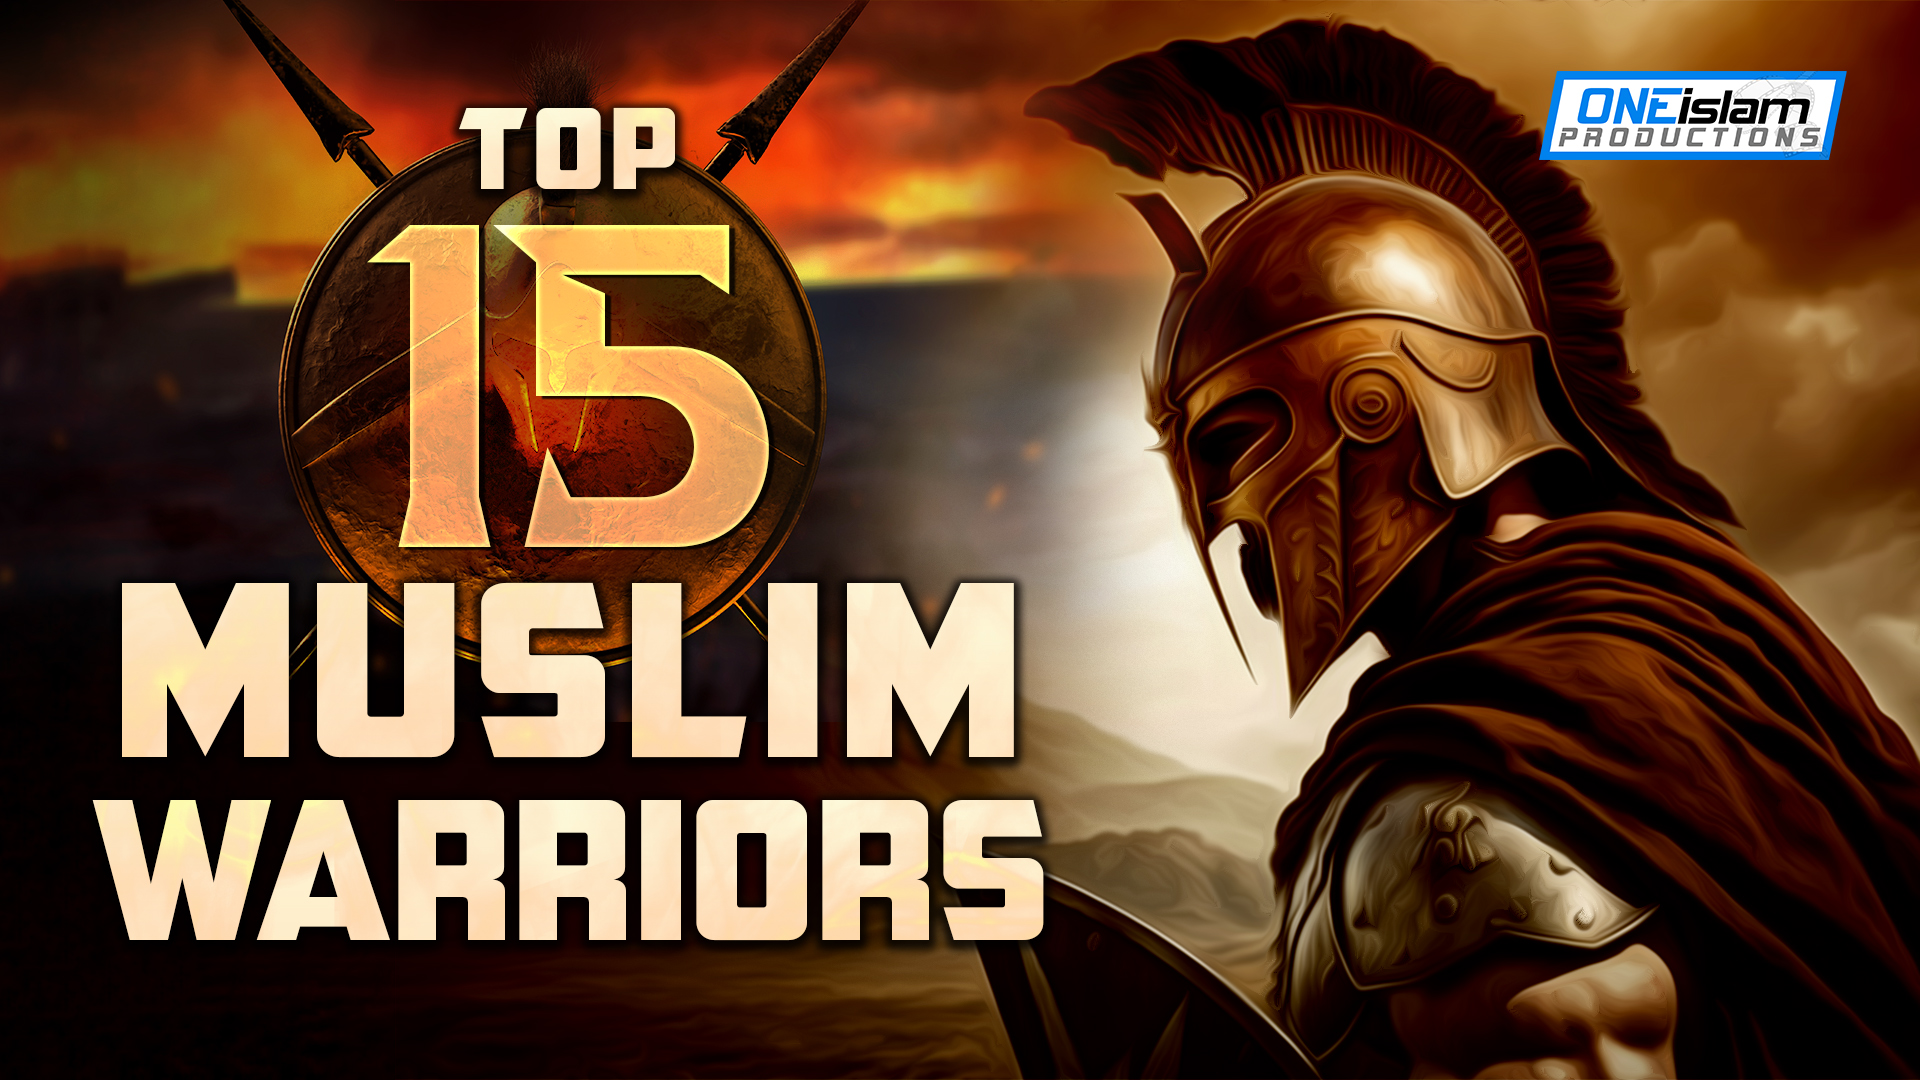 Top-15-Muslim-Warriors (1)